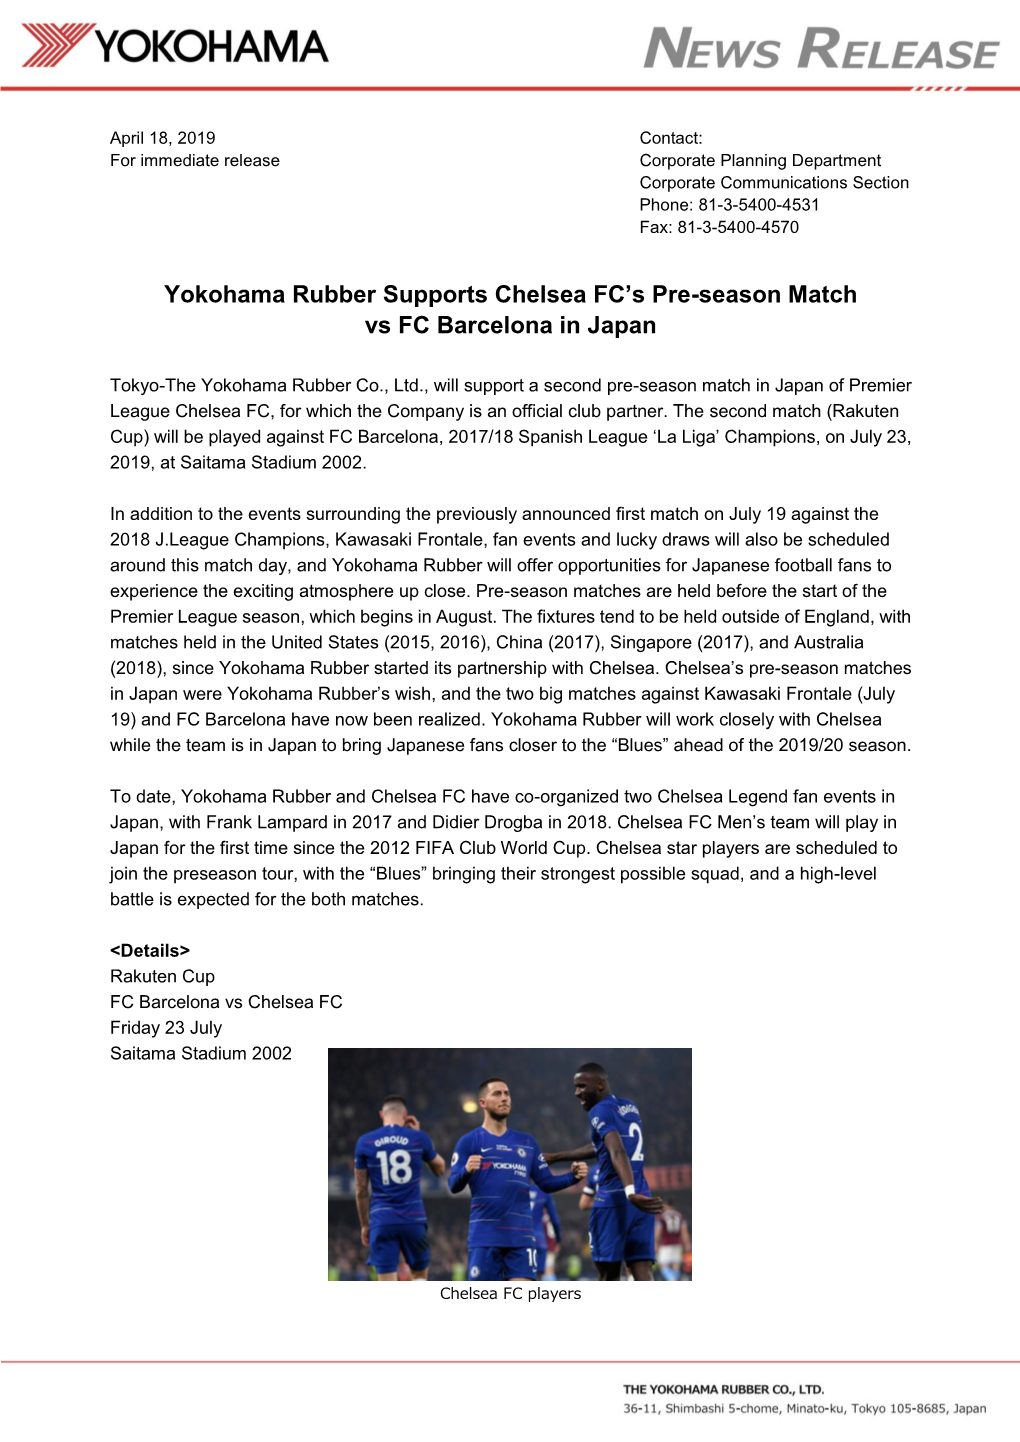 Yokohama Rubber Supports Chelsea FC's Pre-Season Match Vs FC